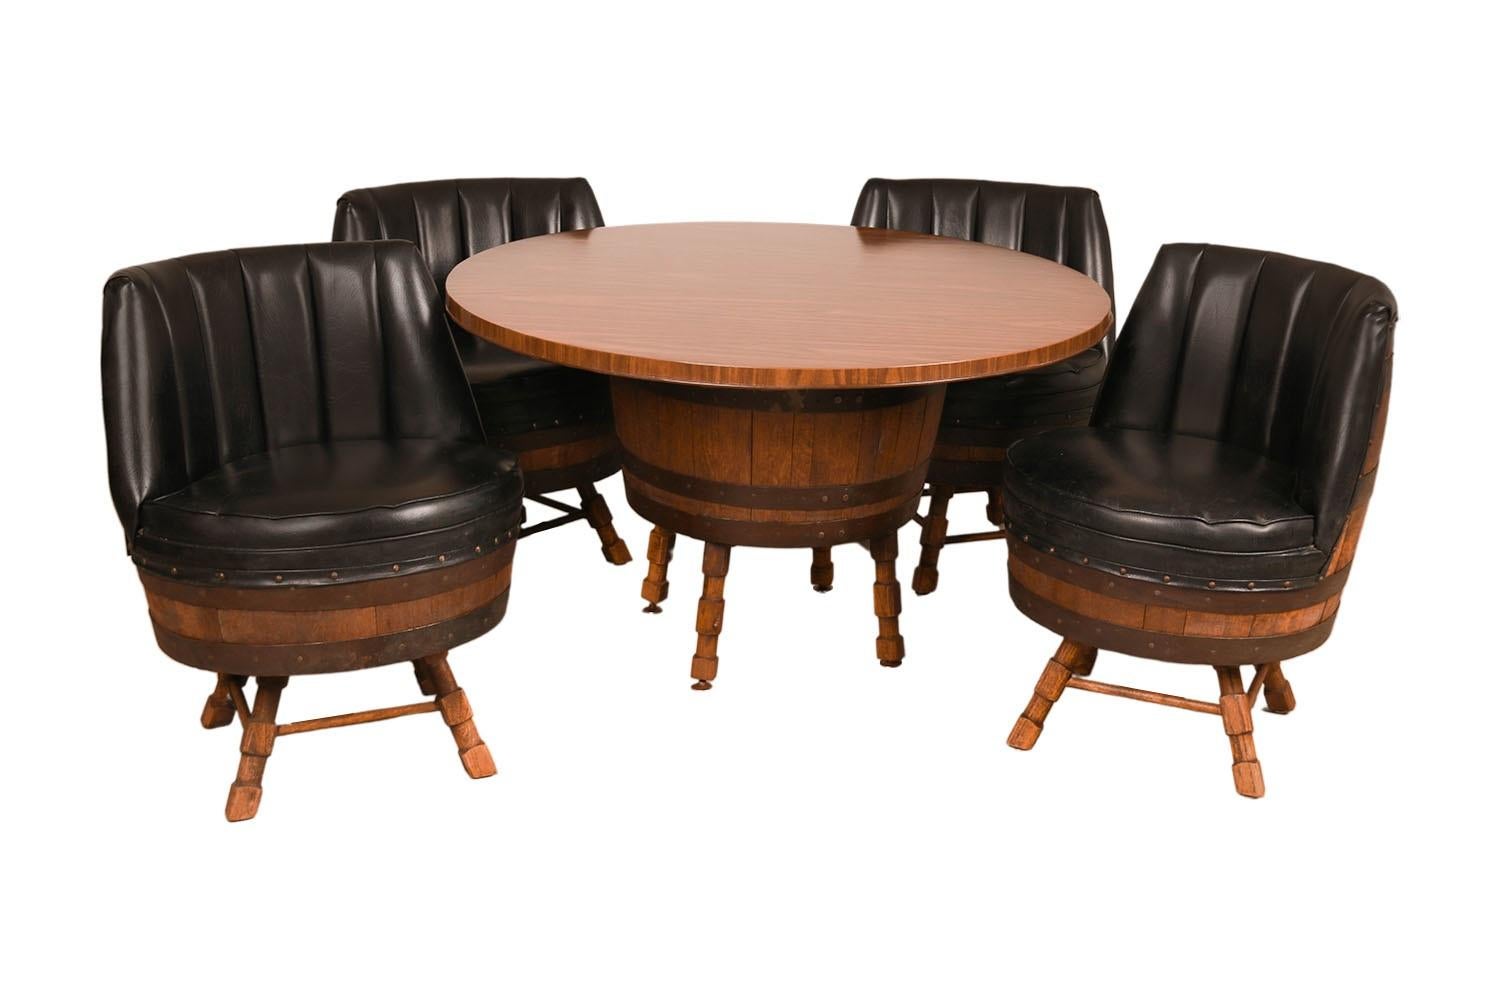 Un superbe ensemble de table et de chaises en tonneau de whisky.  Le plateau rond repose sur une base en tonneau avec quatre pieds robustes créant une base extrêmement solide. Magnifiquement associé à quatre chaises pivotantes assorties, chacune